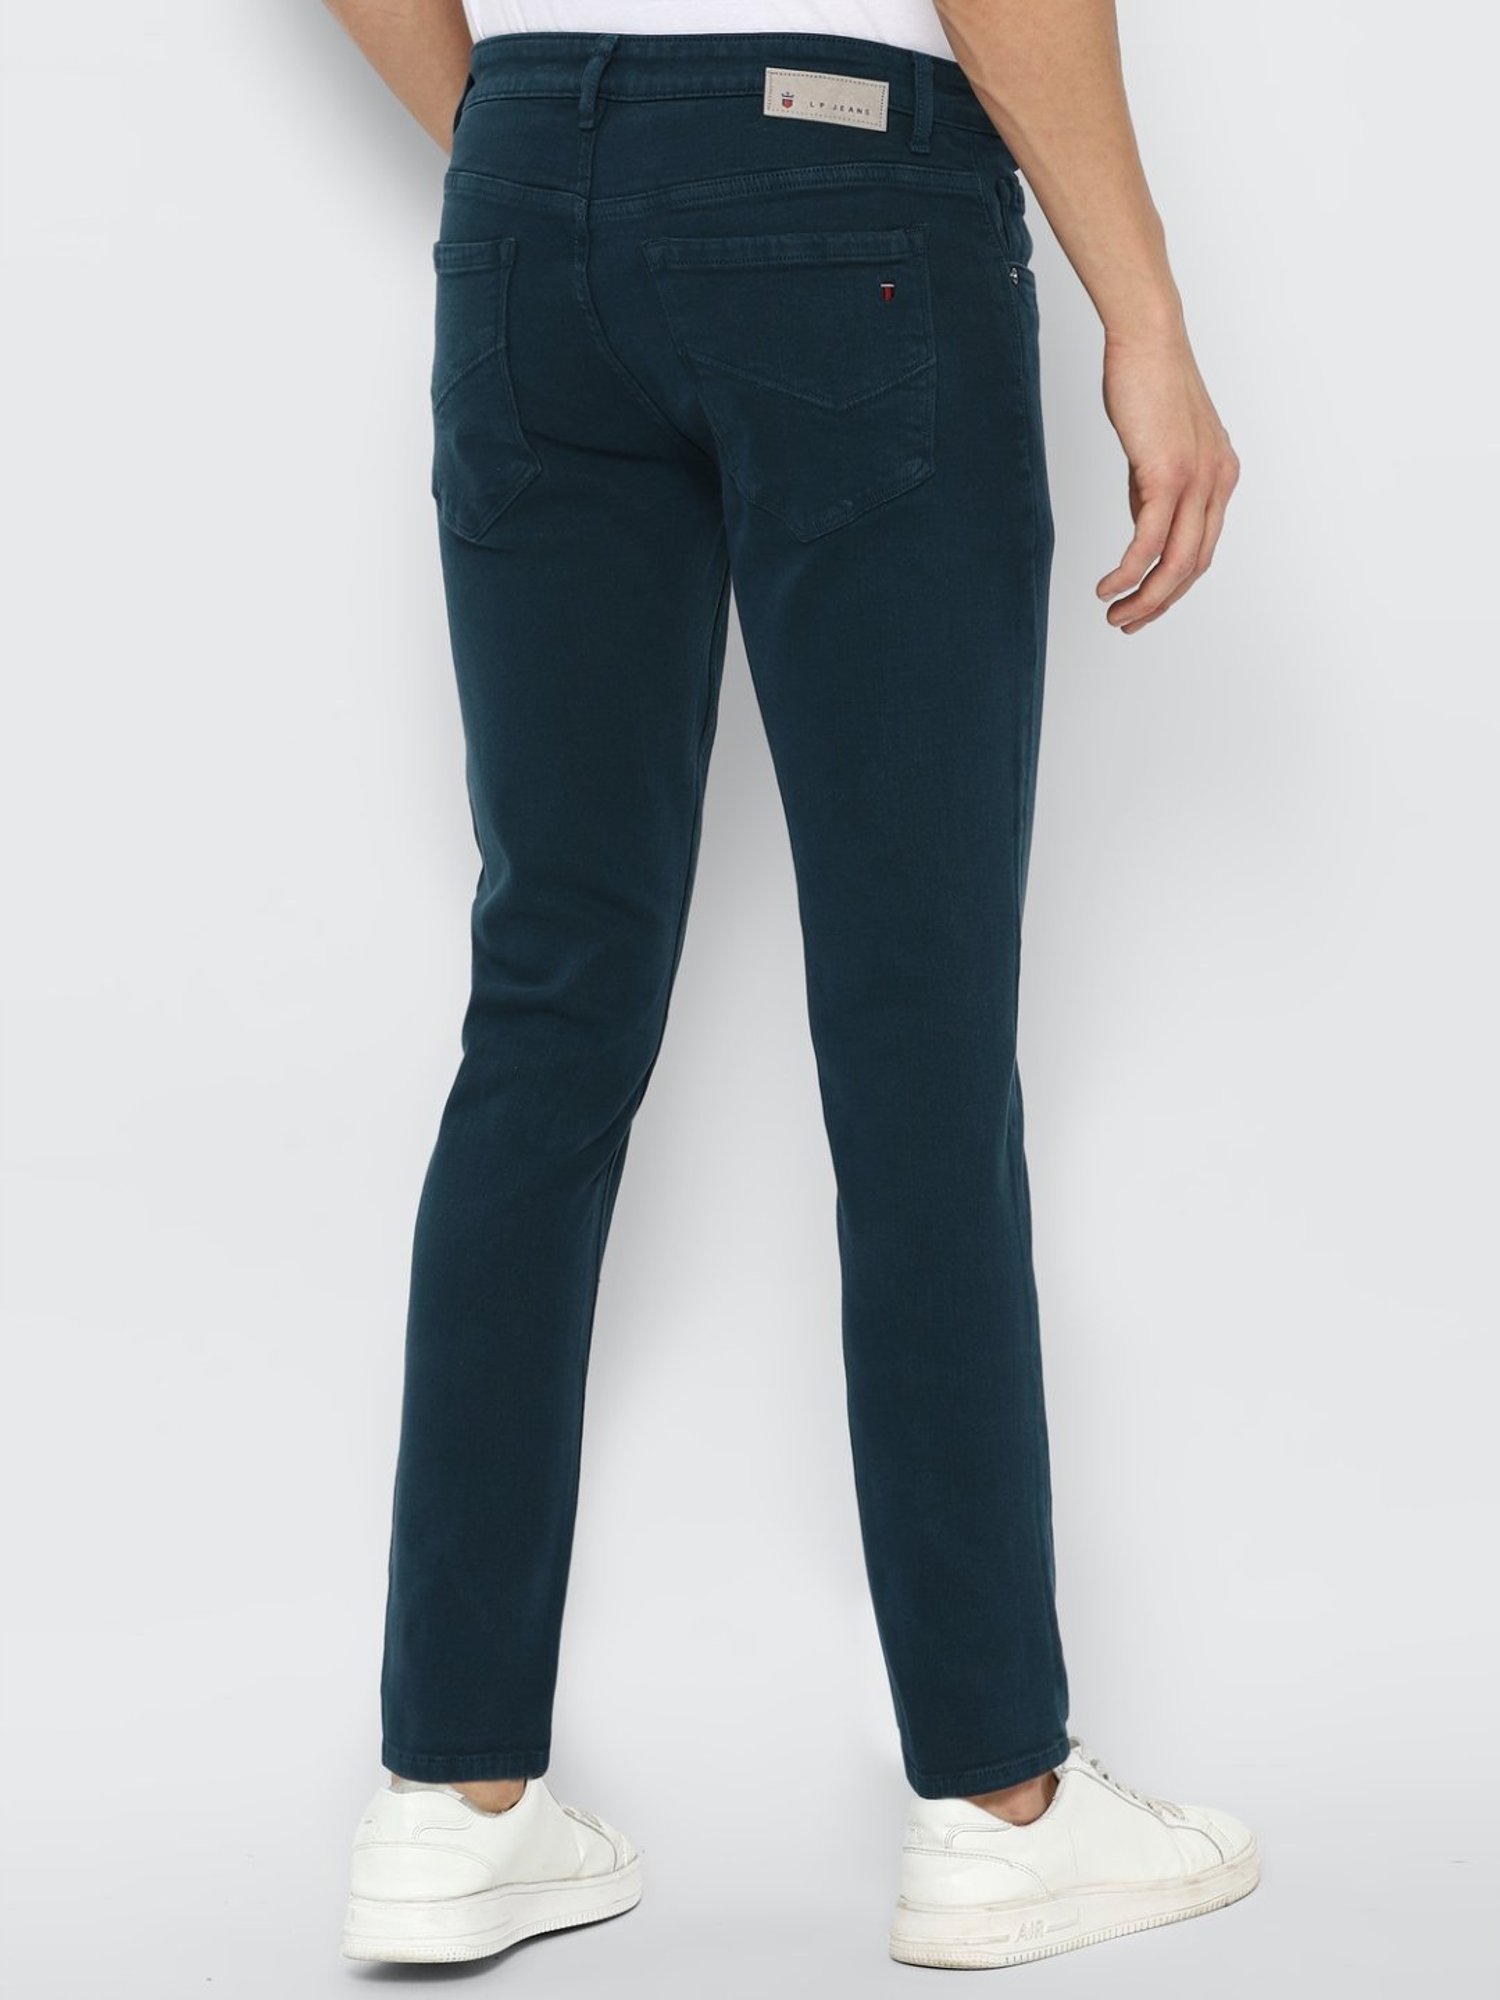 Plain Blue Men Cotton Jeans, Comfort Fit at Rs 430/piece in New Delhi